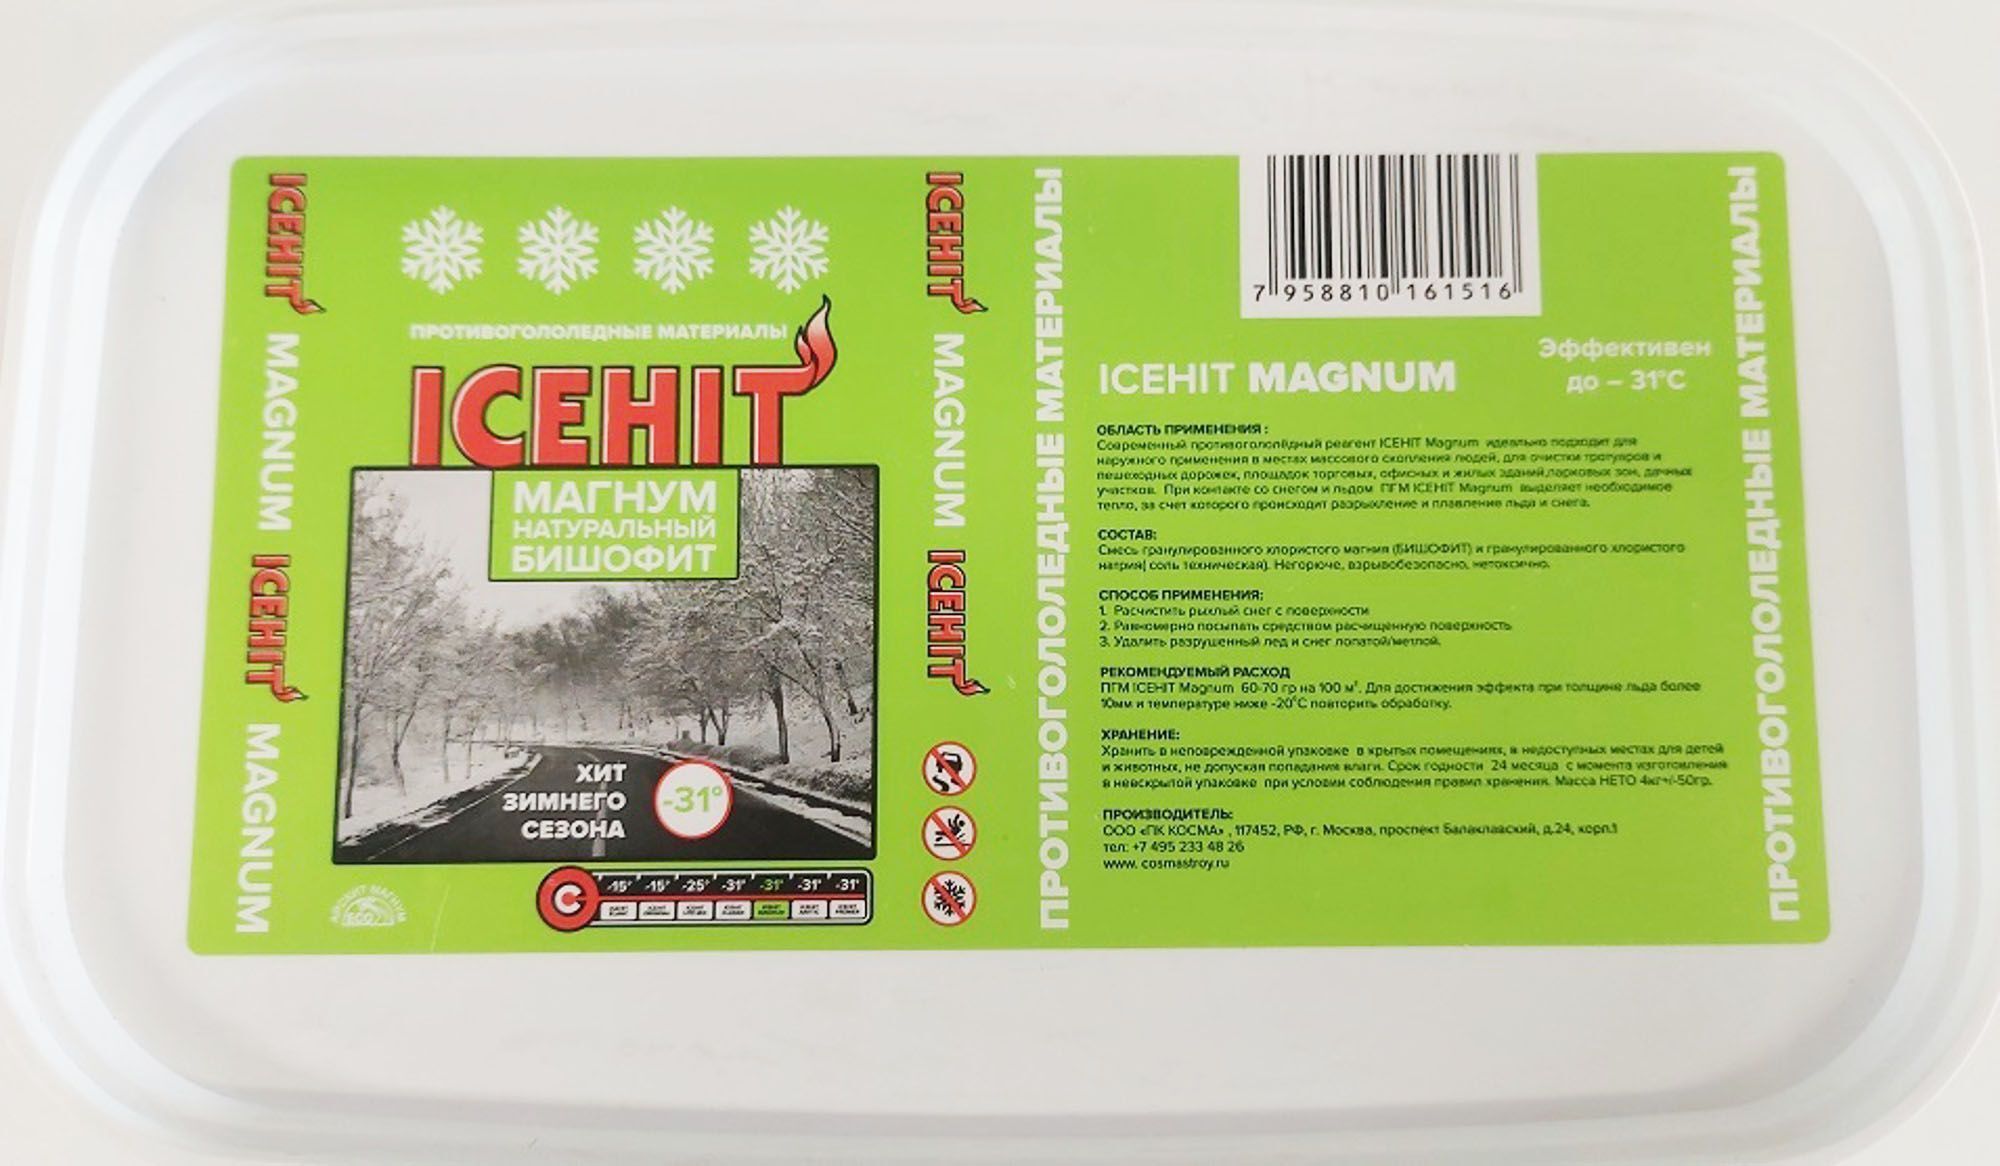 АЙСХИТ Магнум реагент противогололедный до -31C (4кг) / ICEHIT Magnum реагент противогололедный материал до -31C (4кг)